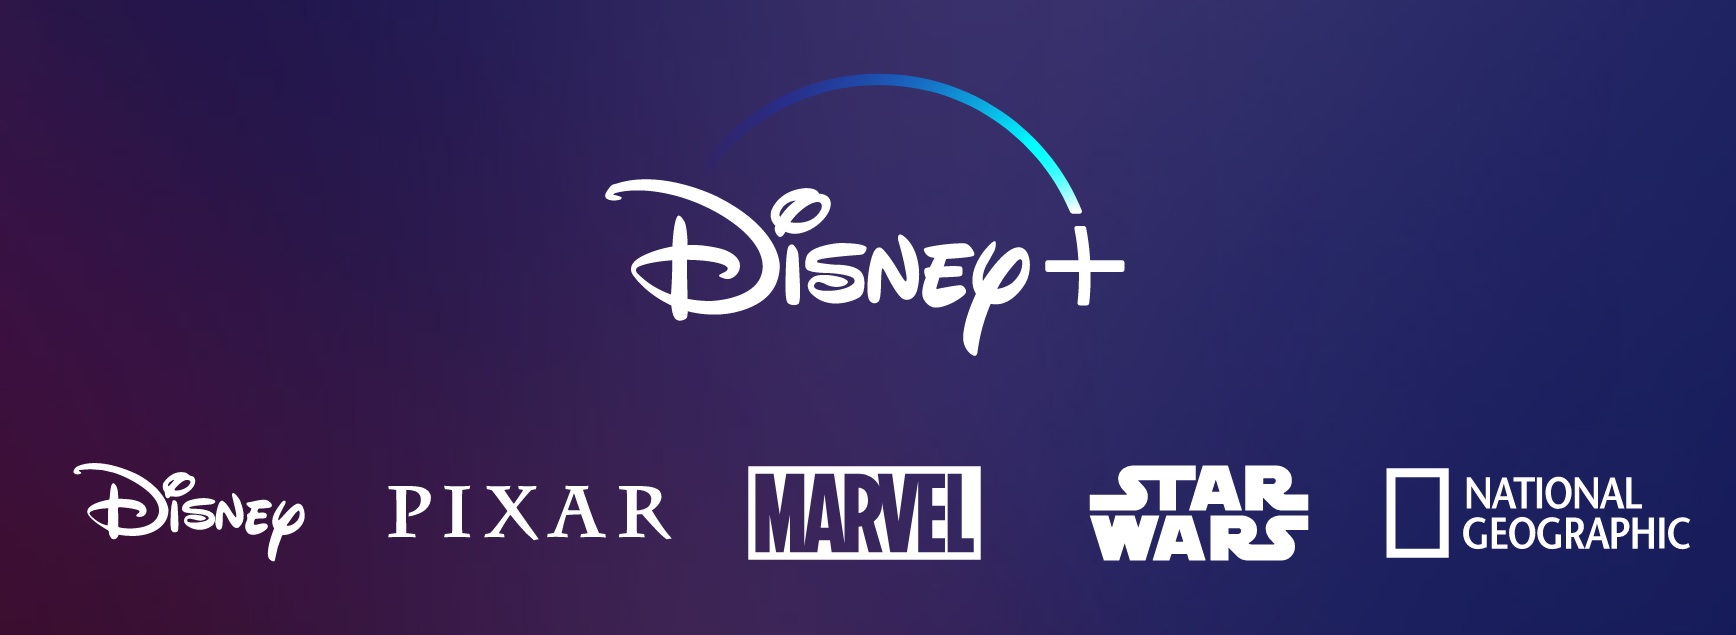 Disney+, aumento dei costi di abbonamento in arrivo?